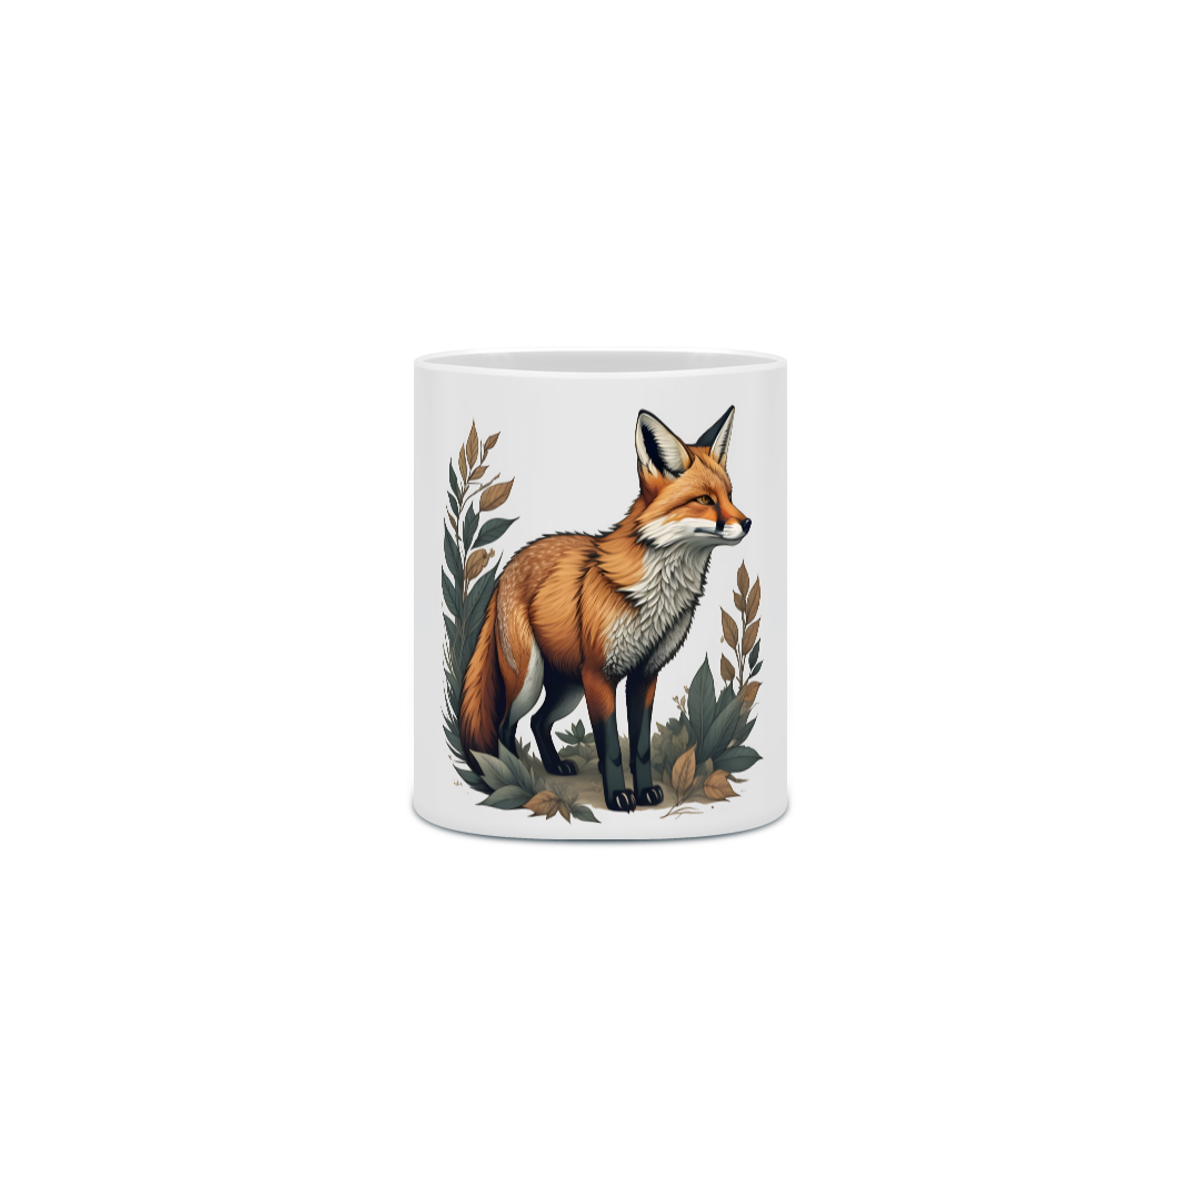 Nome do produto: Wild Whispers - Caneca Fox